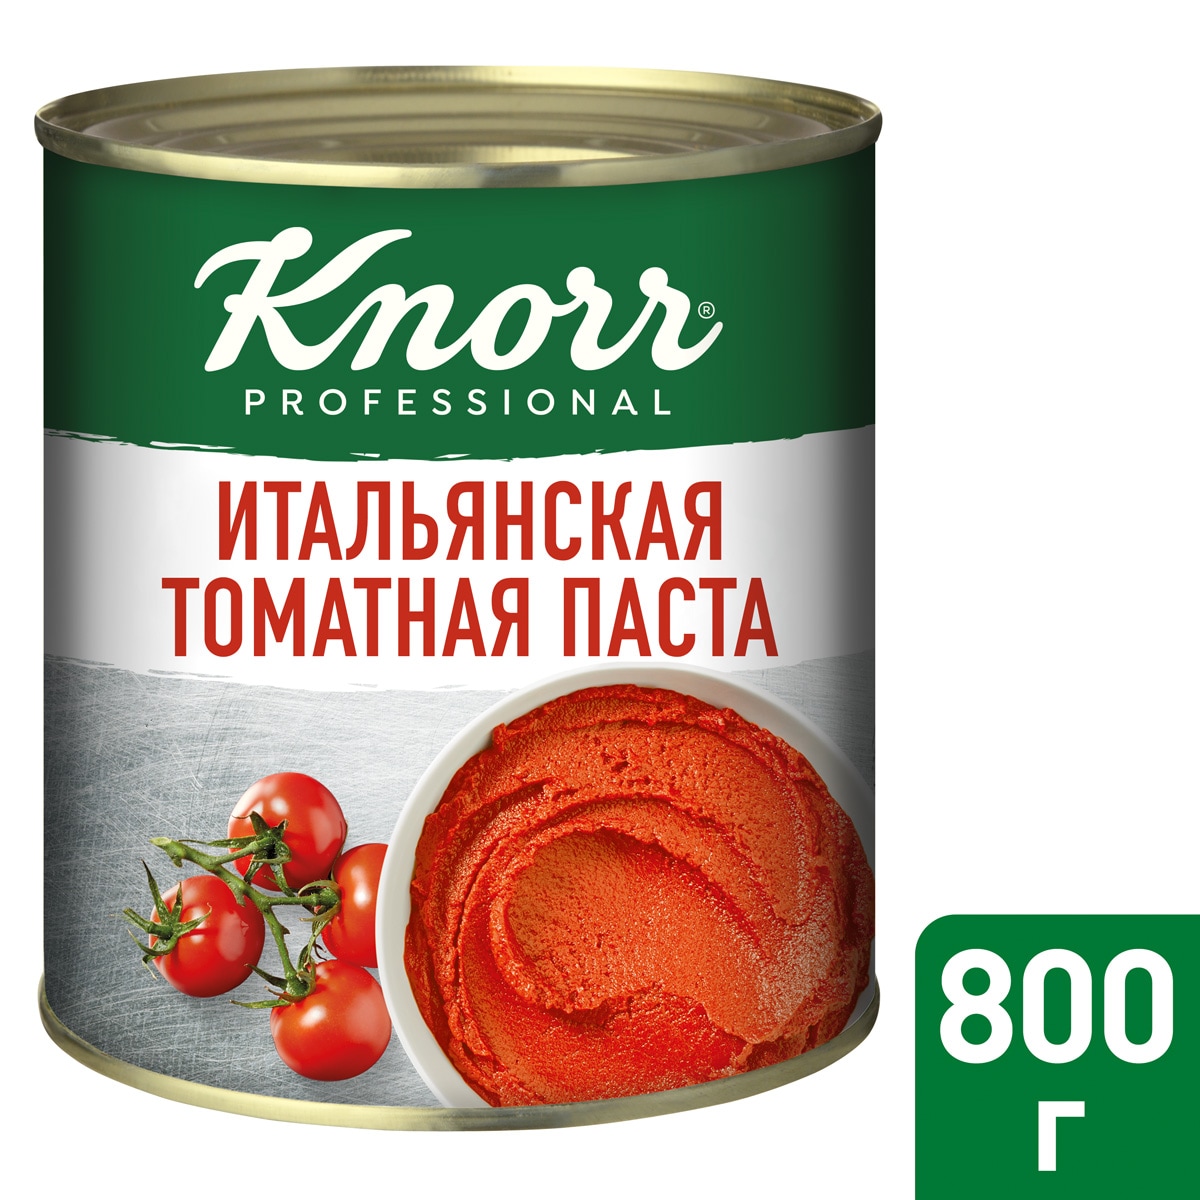 KNORR PROFESSIONAL Итальянская томатная паста (800 г) - Knorr Professional Итальянская томатная паста (800г) обладает стабильной густой консистенцией и насыщенным цветом